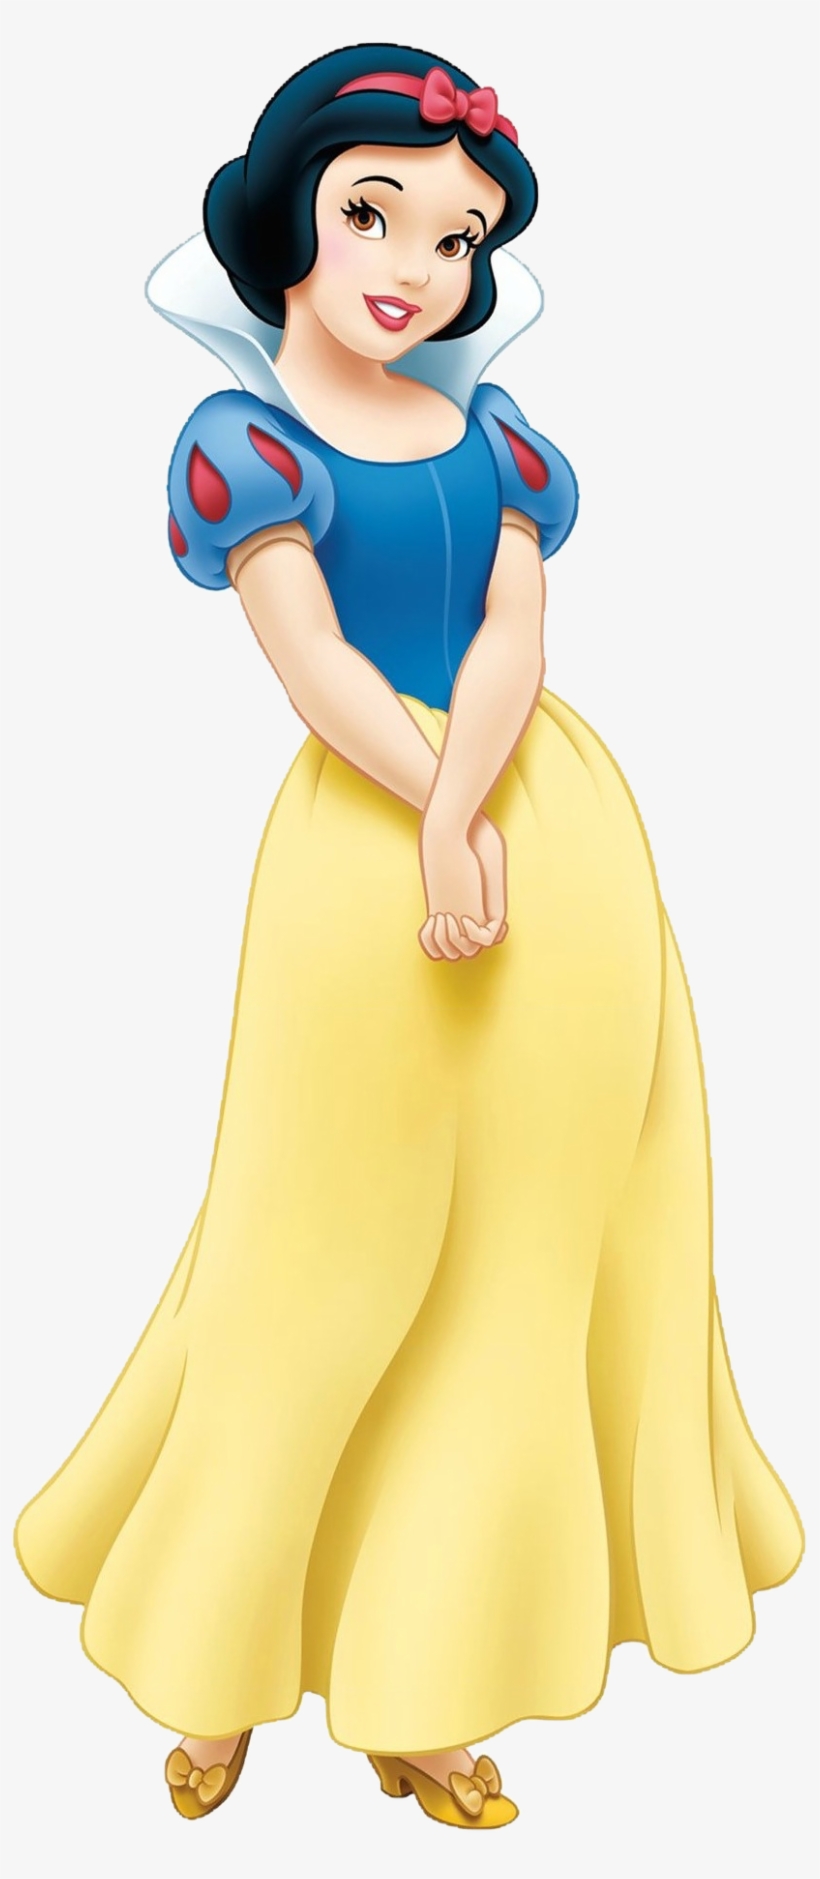 Snow White Transparent - Snow White, transparent png #601376